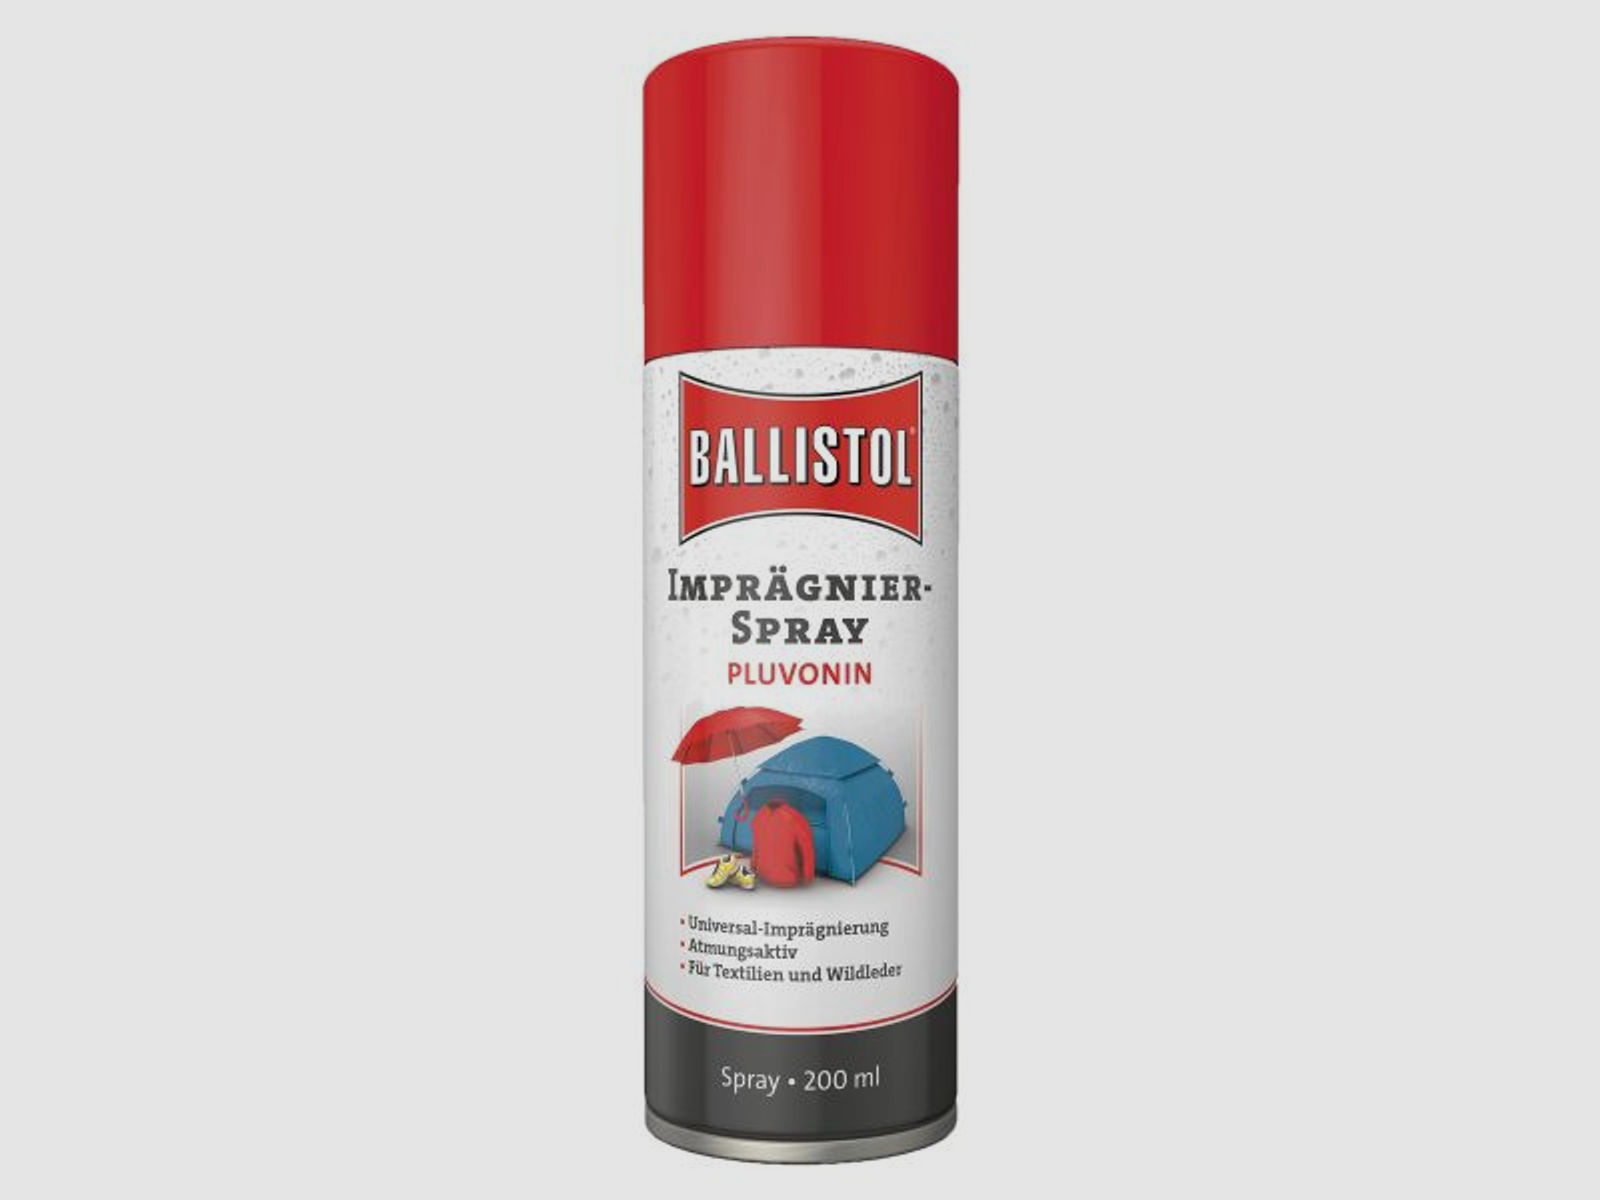 Ballistol Ballistol Imprägnierspray Pluvonin 200 ml